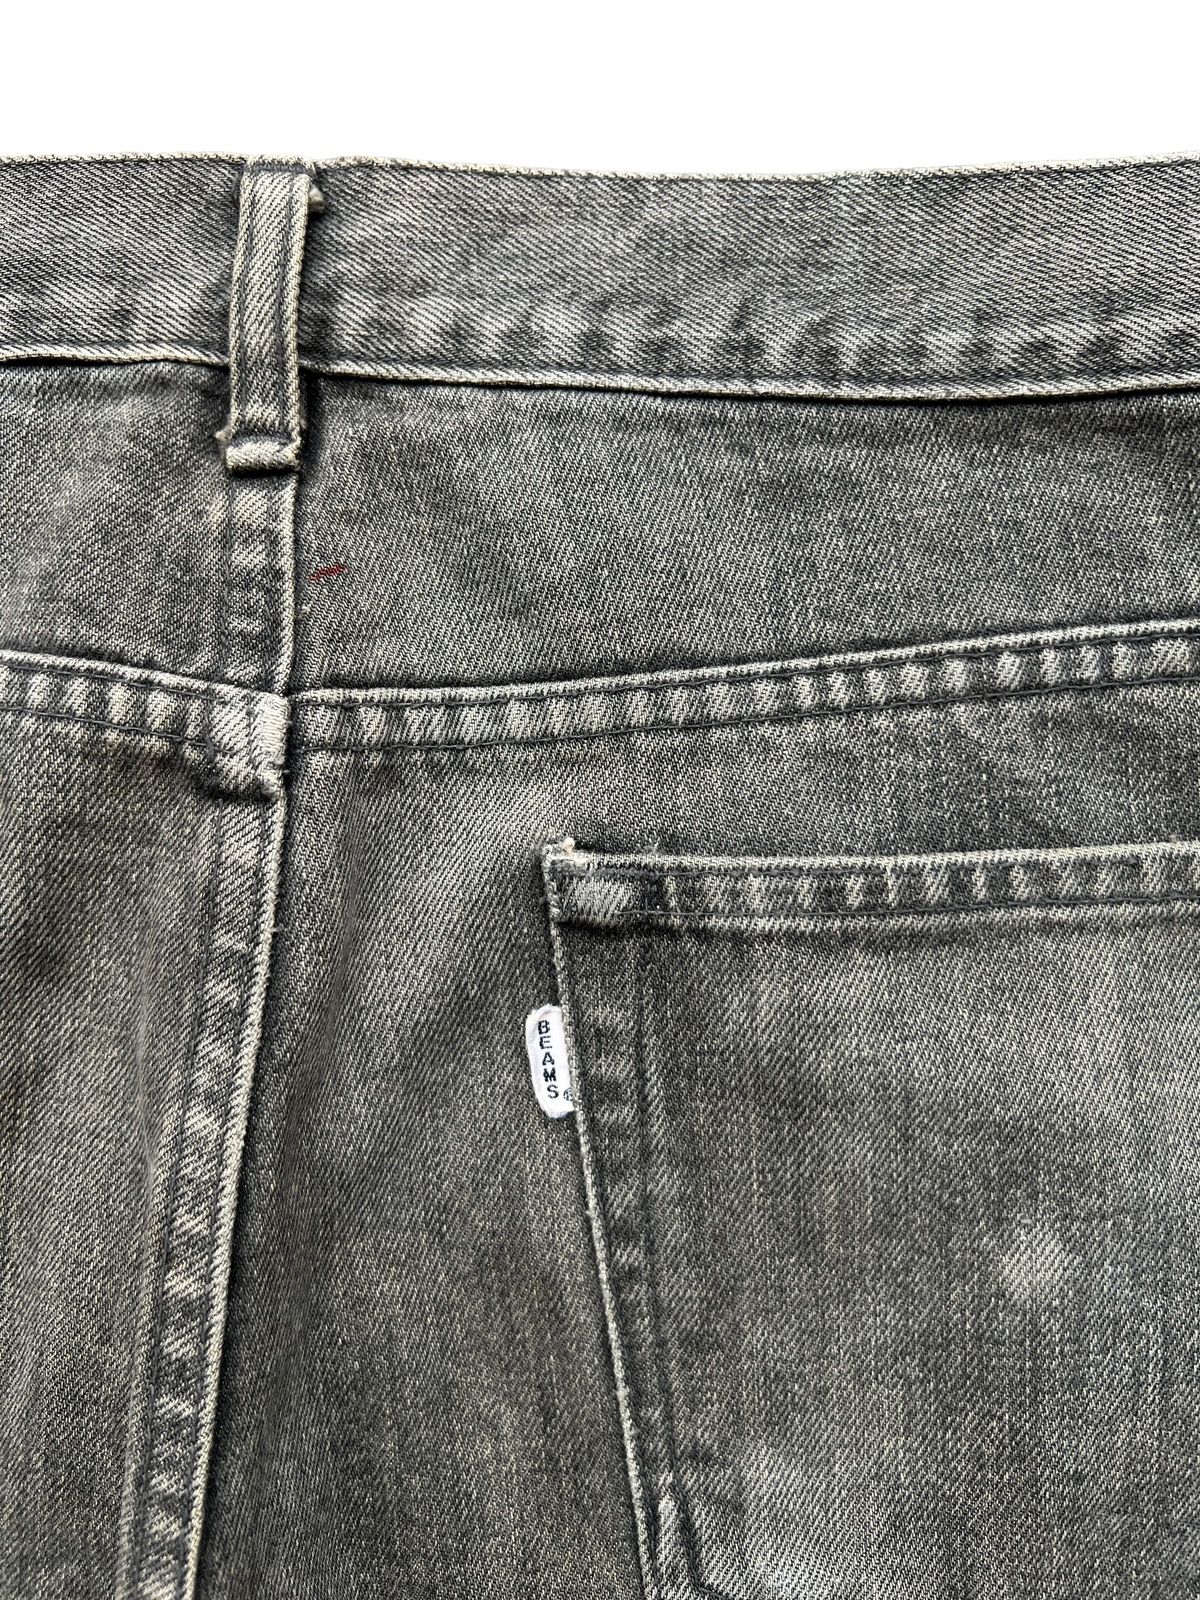 Vintage 90s Beams Skinny Fit Denim Jeans 32x29 - 8